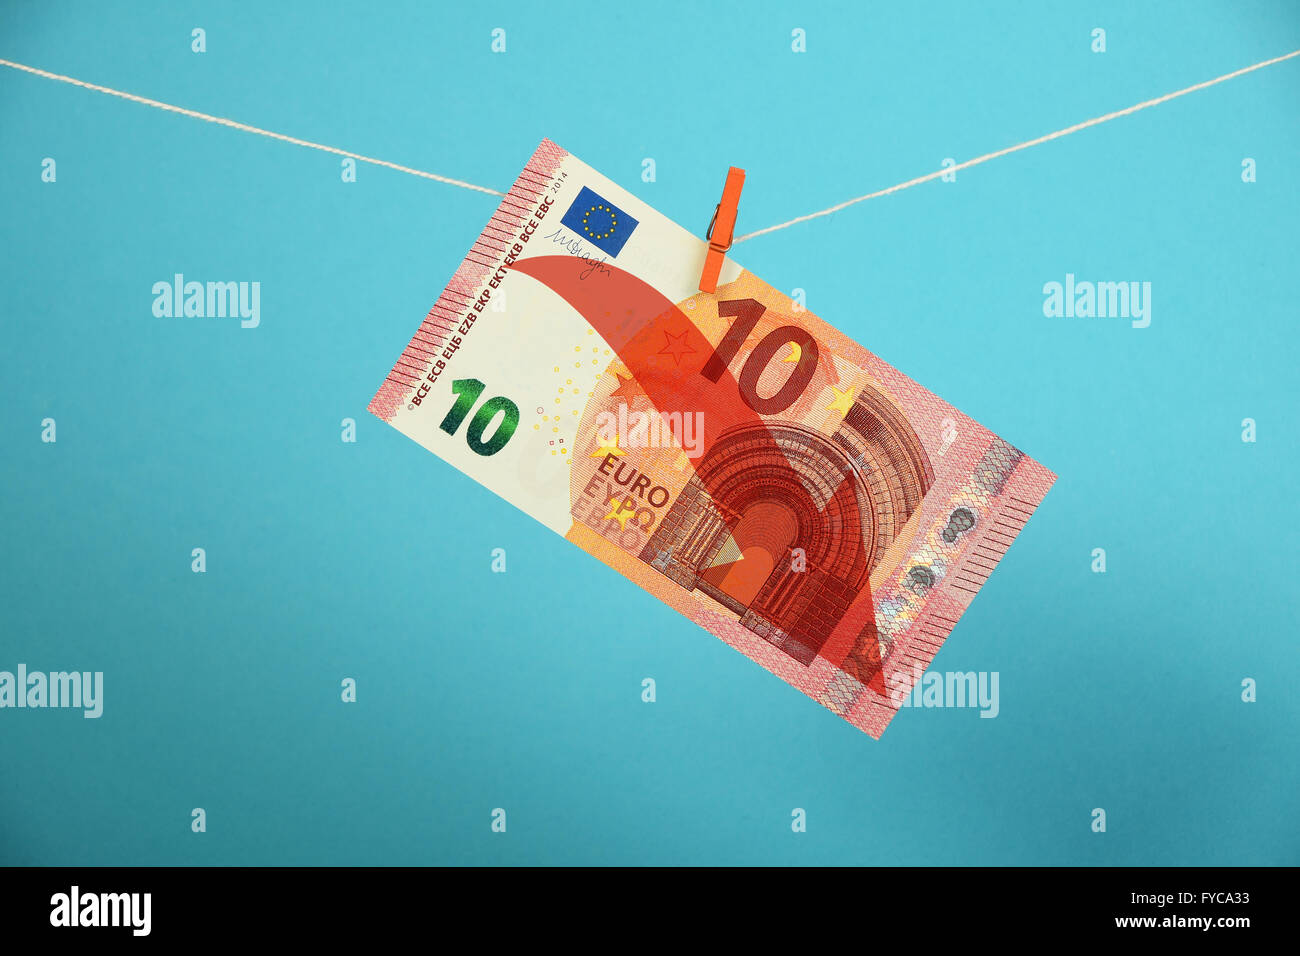 Europäische Wirtschaftskrise, Niedergang des Euro, 10 Euro-Banknote mit roten Pfeil nach unten gehängt absteigend mit Pin am Seil über blaue bac Stockfoto